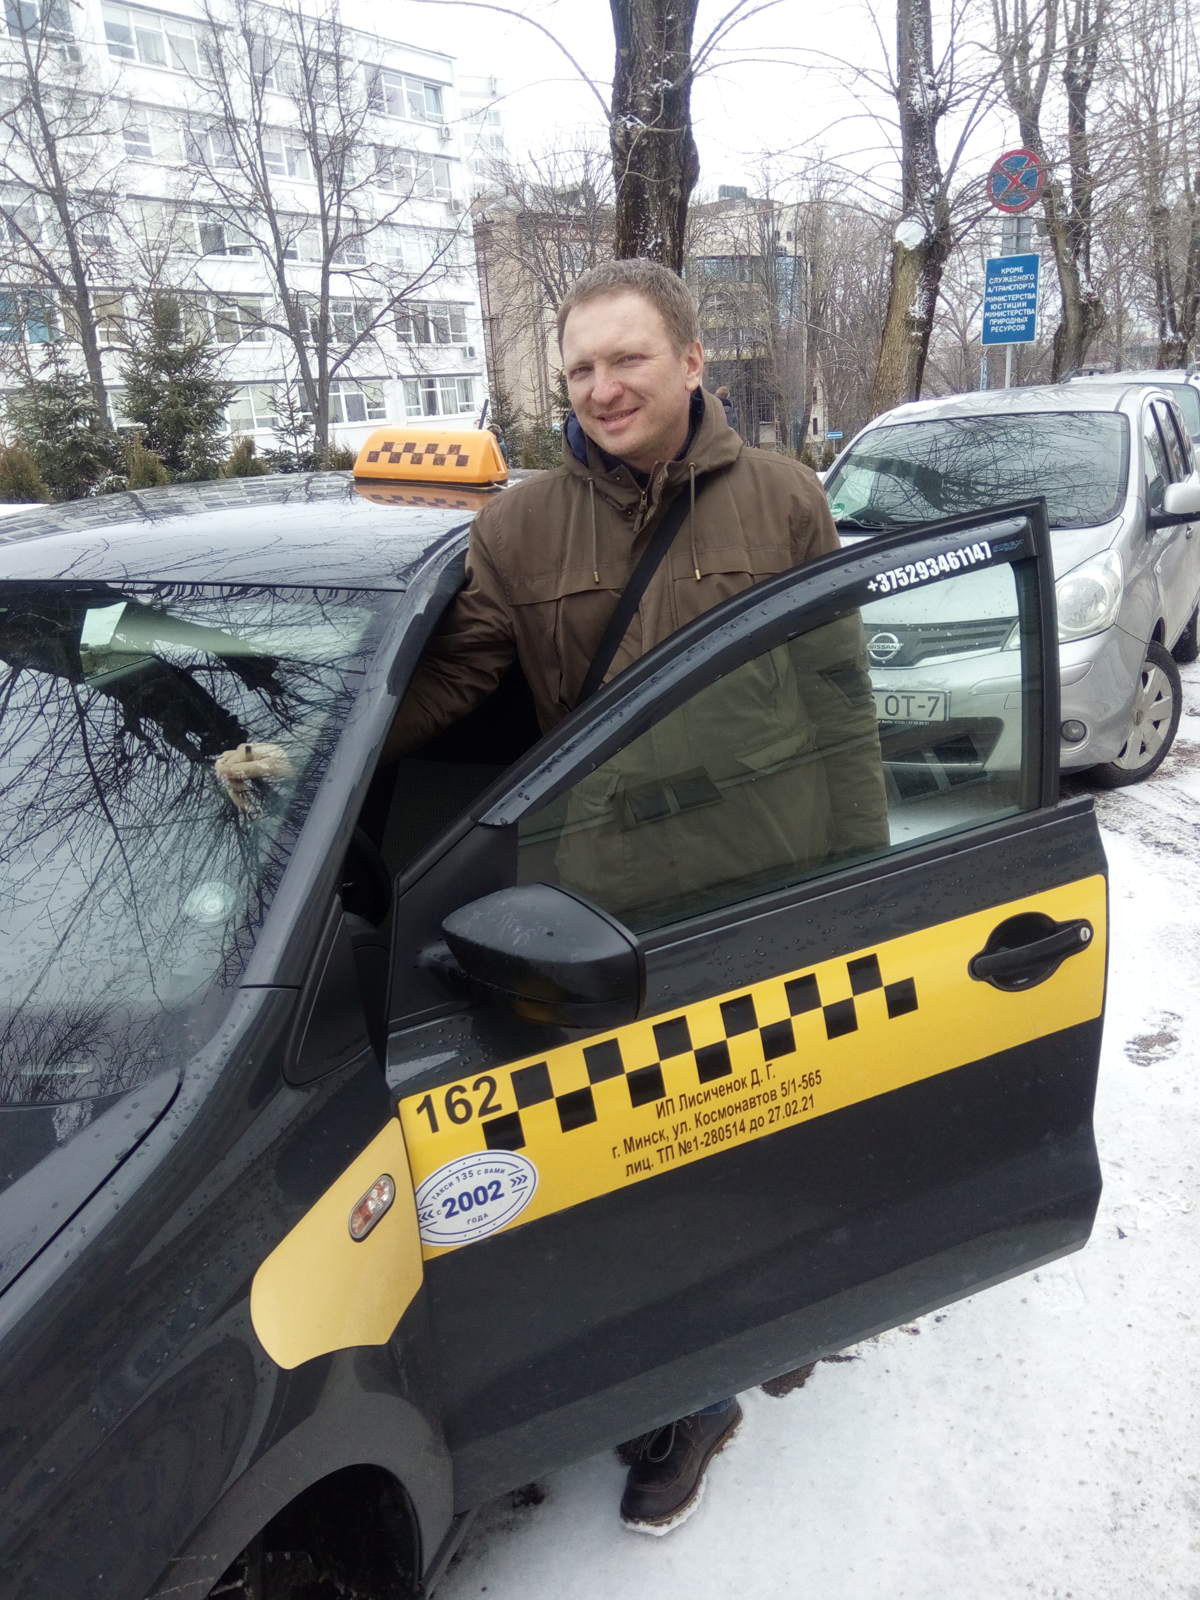 Минский таксист Дмитрий: государство занимается ненужным контролем, вместо того чтобы поддерживать тех, кто работает честно